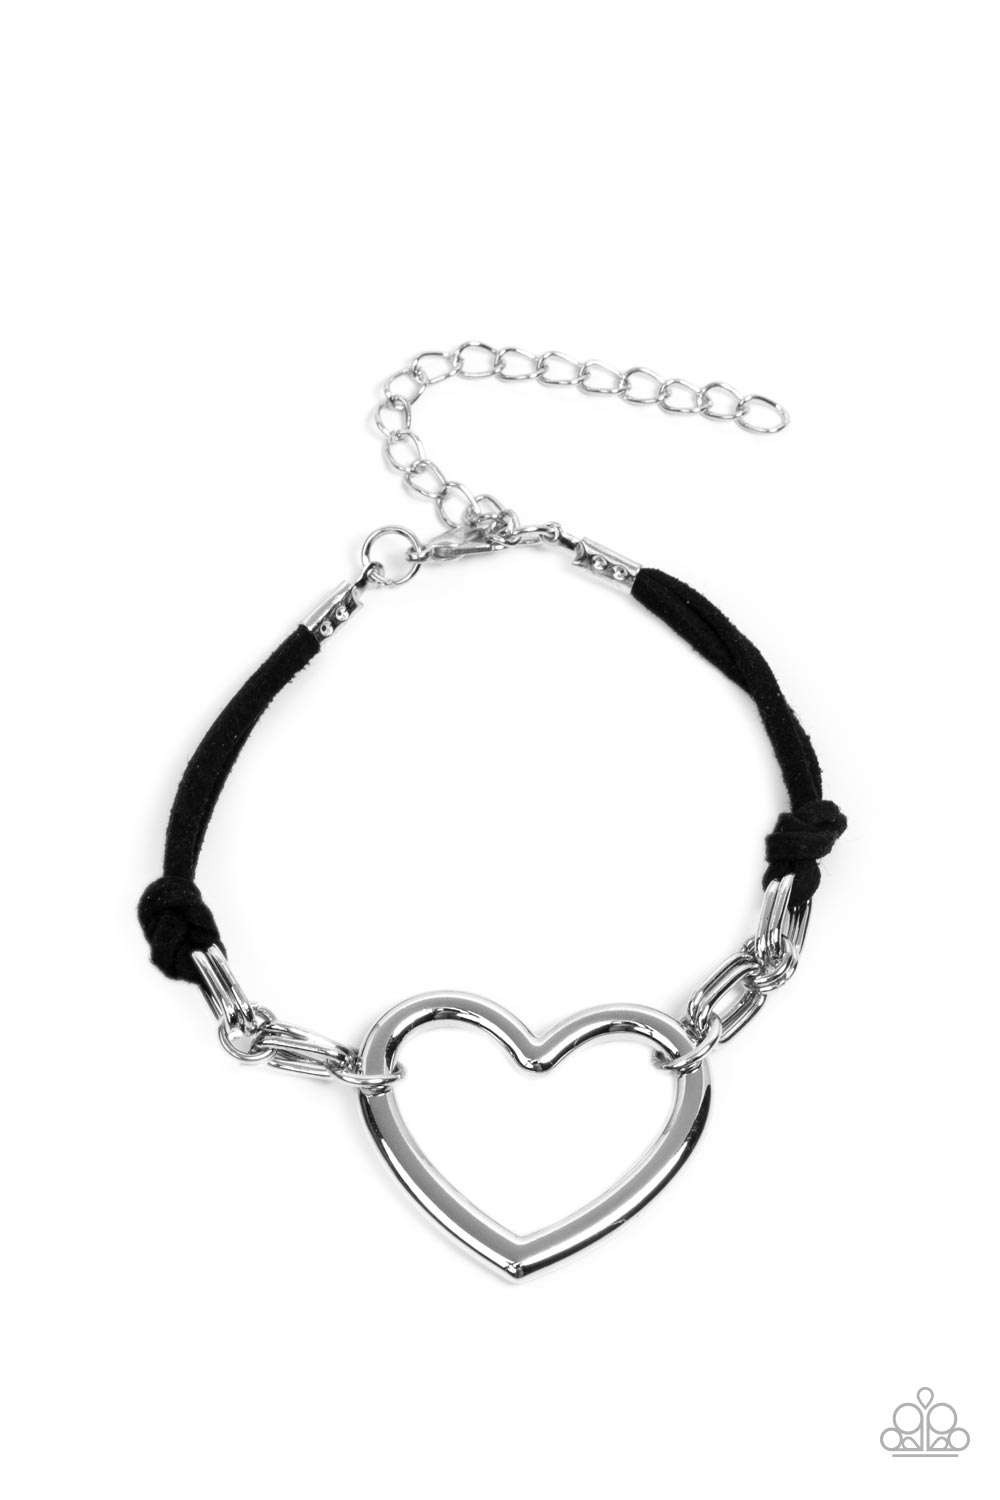 Flirty Flavour - Black Suede - Silver Heart Bracelet - Paparazzi Accessories